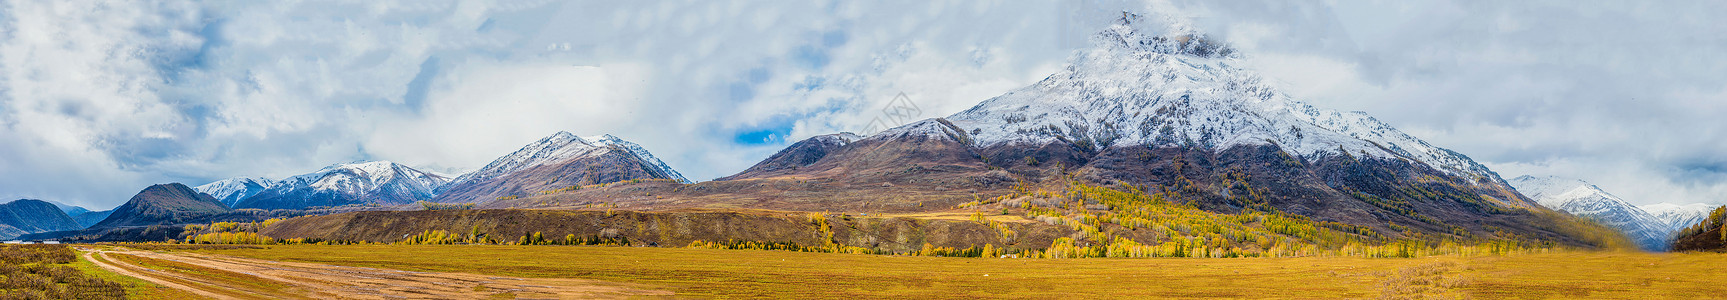 雪中风景北疆秋色雪山全景背景